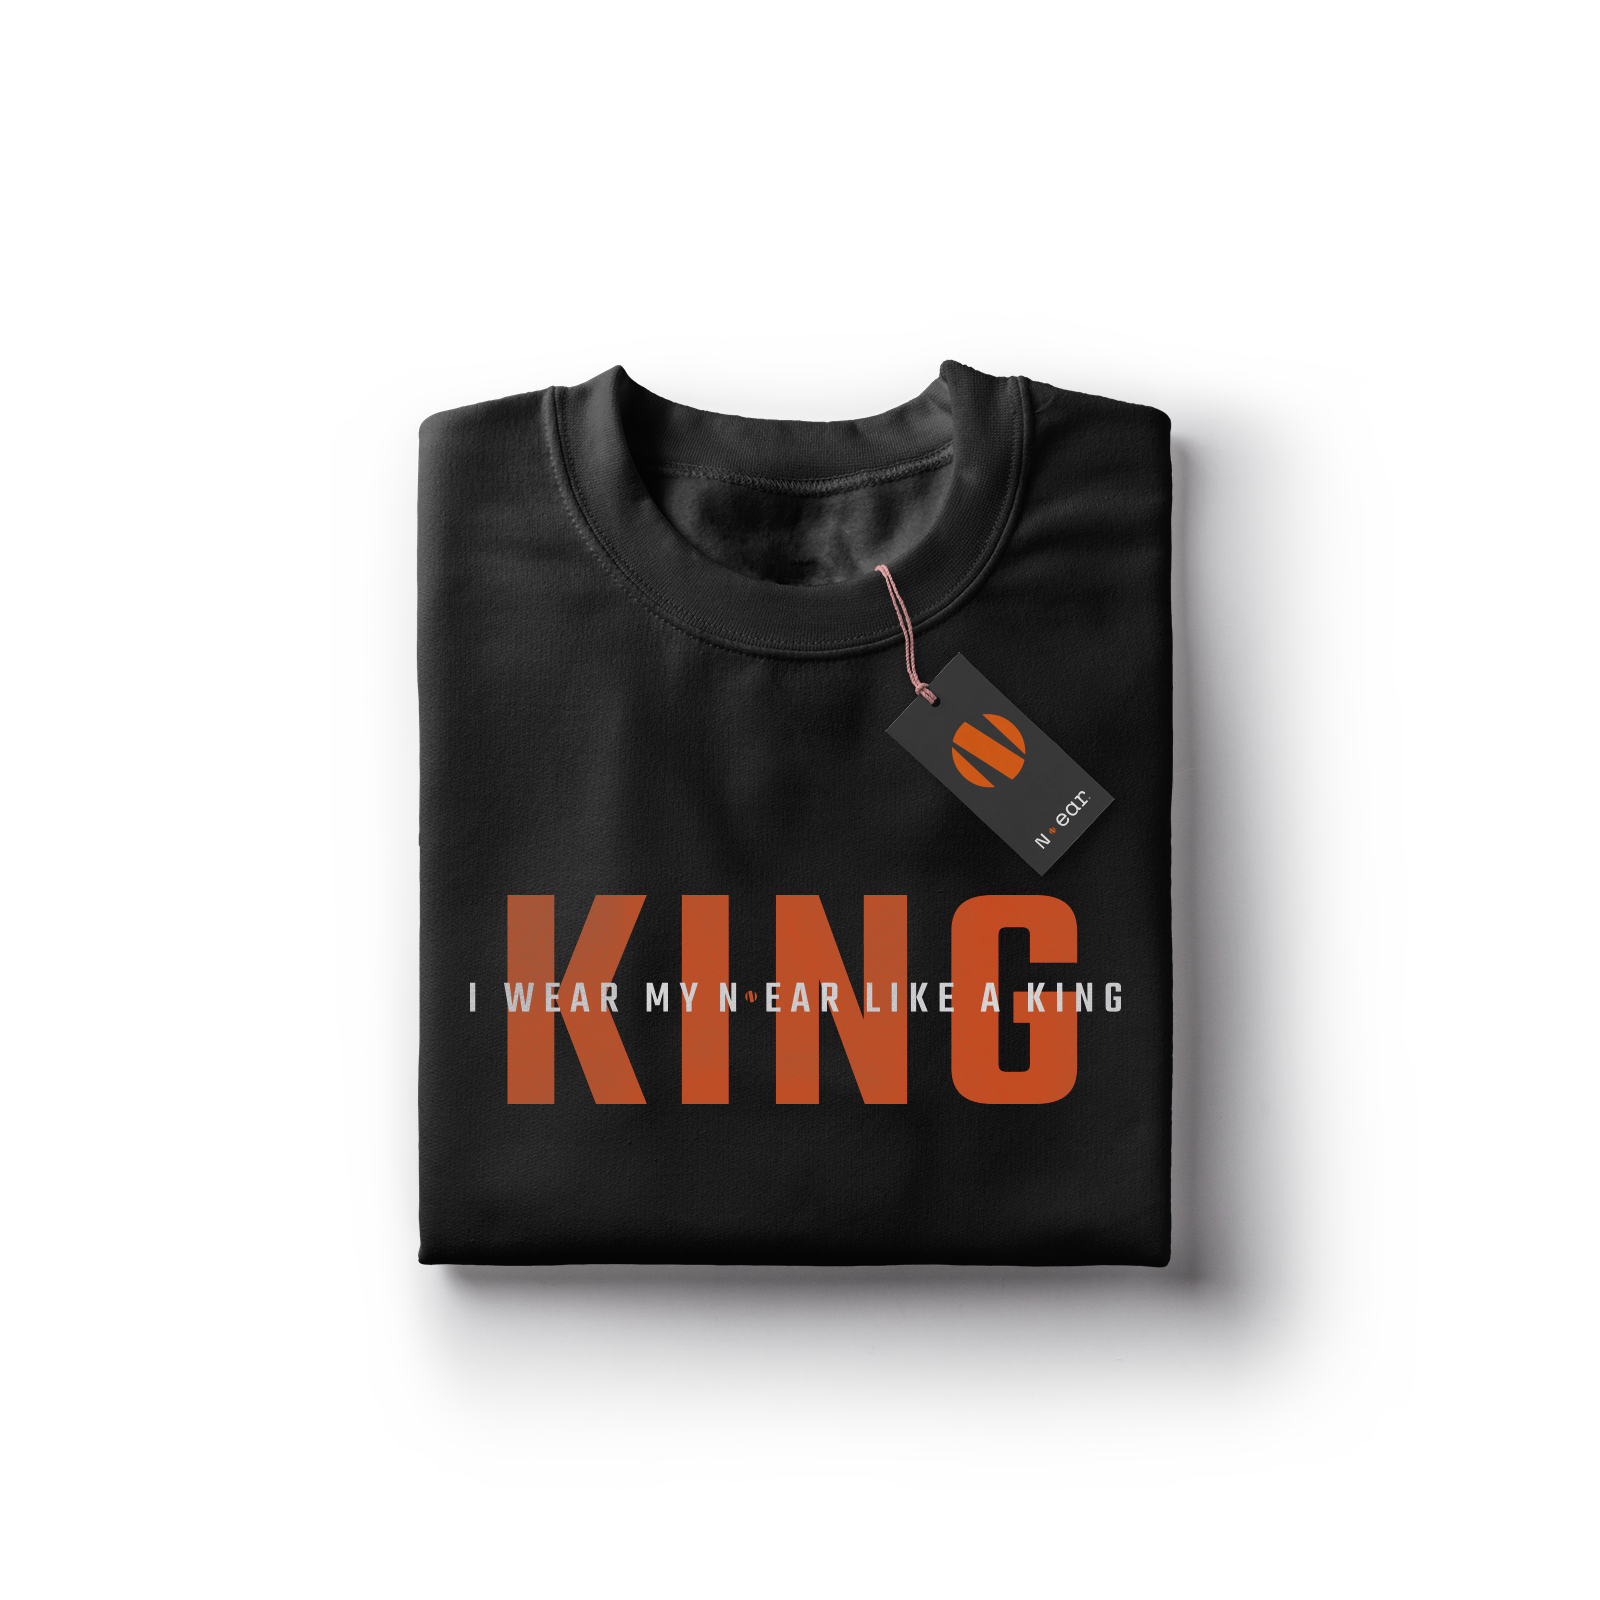 N-ear: Like A King T-Shirt